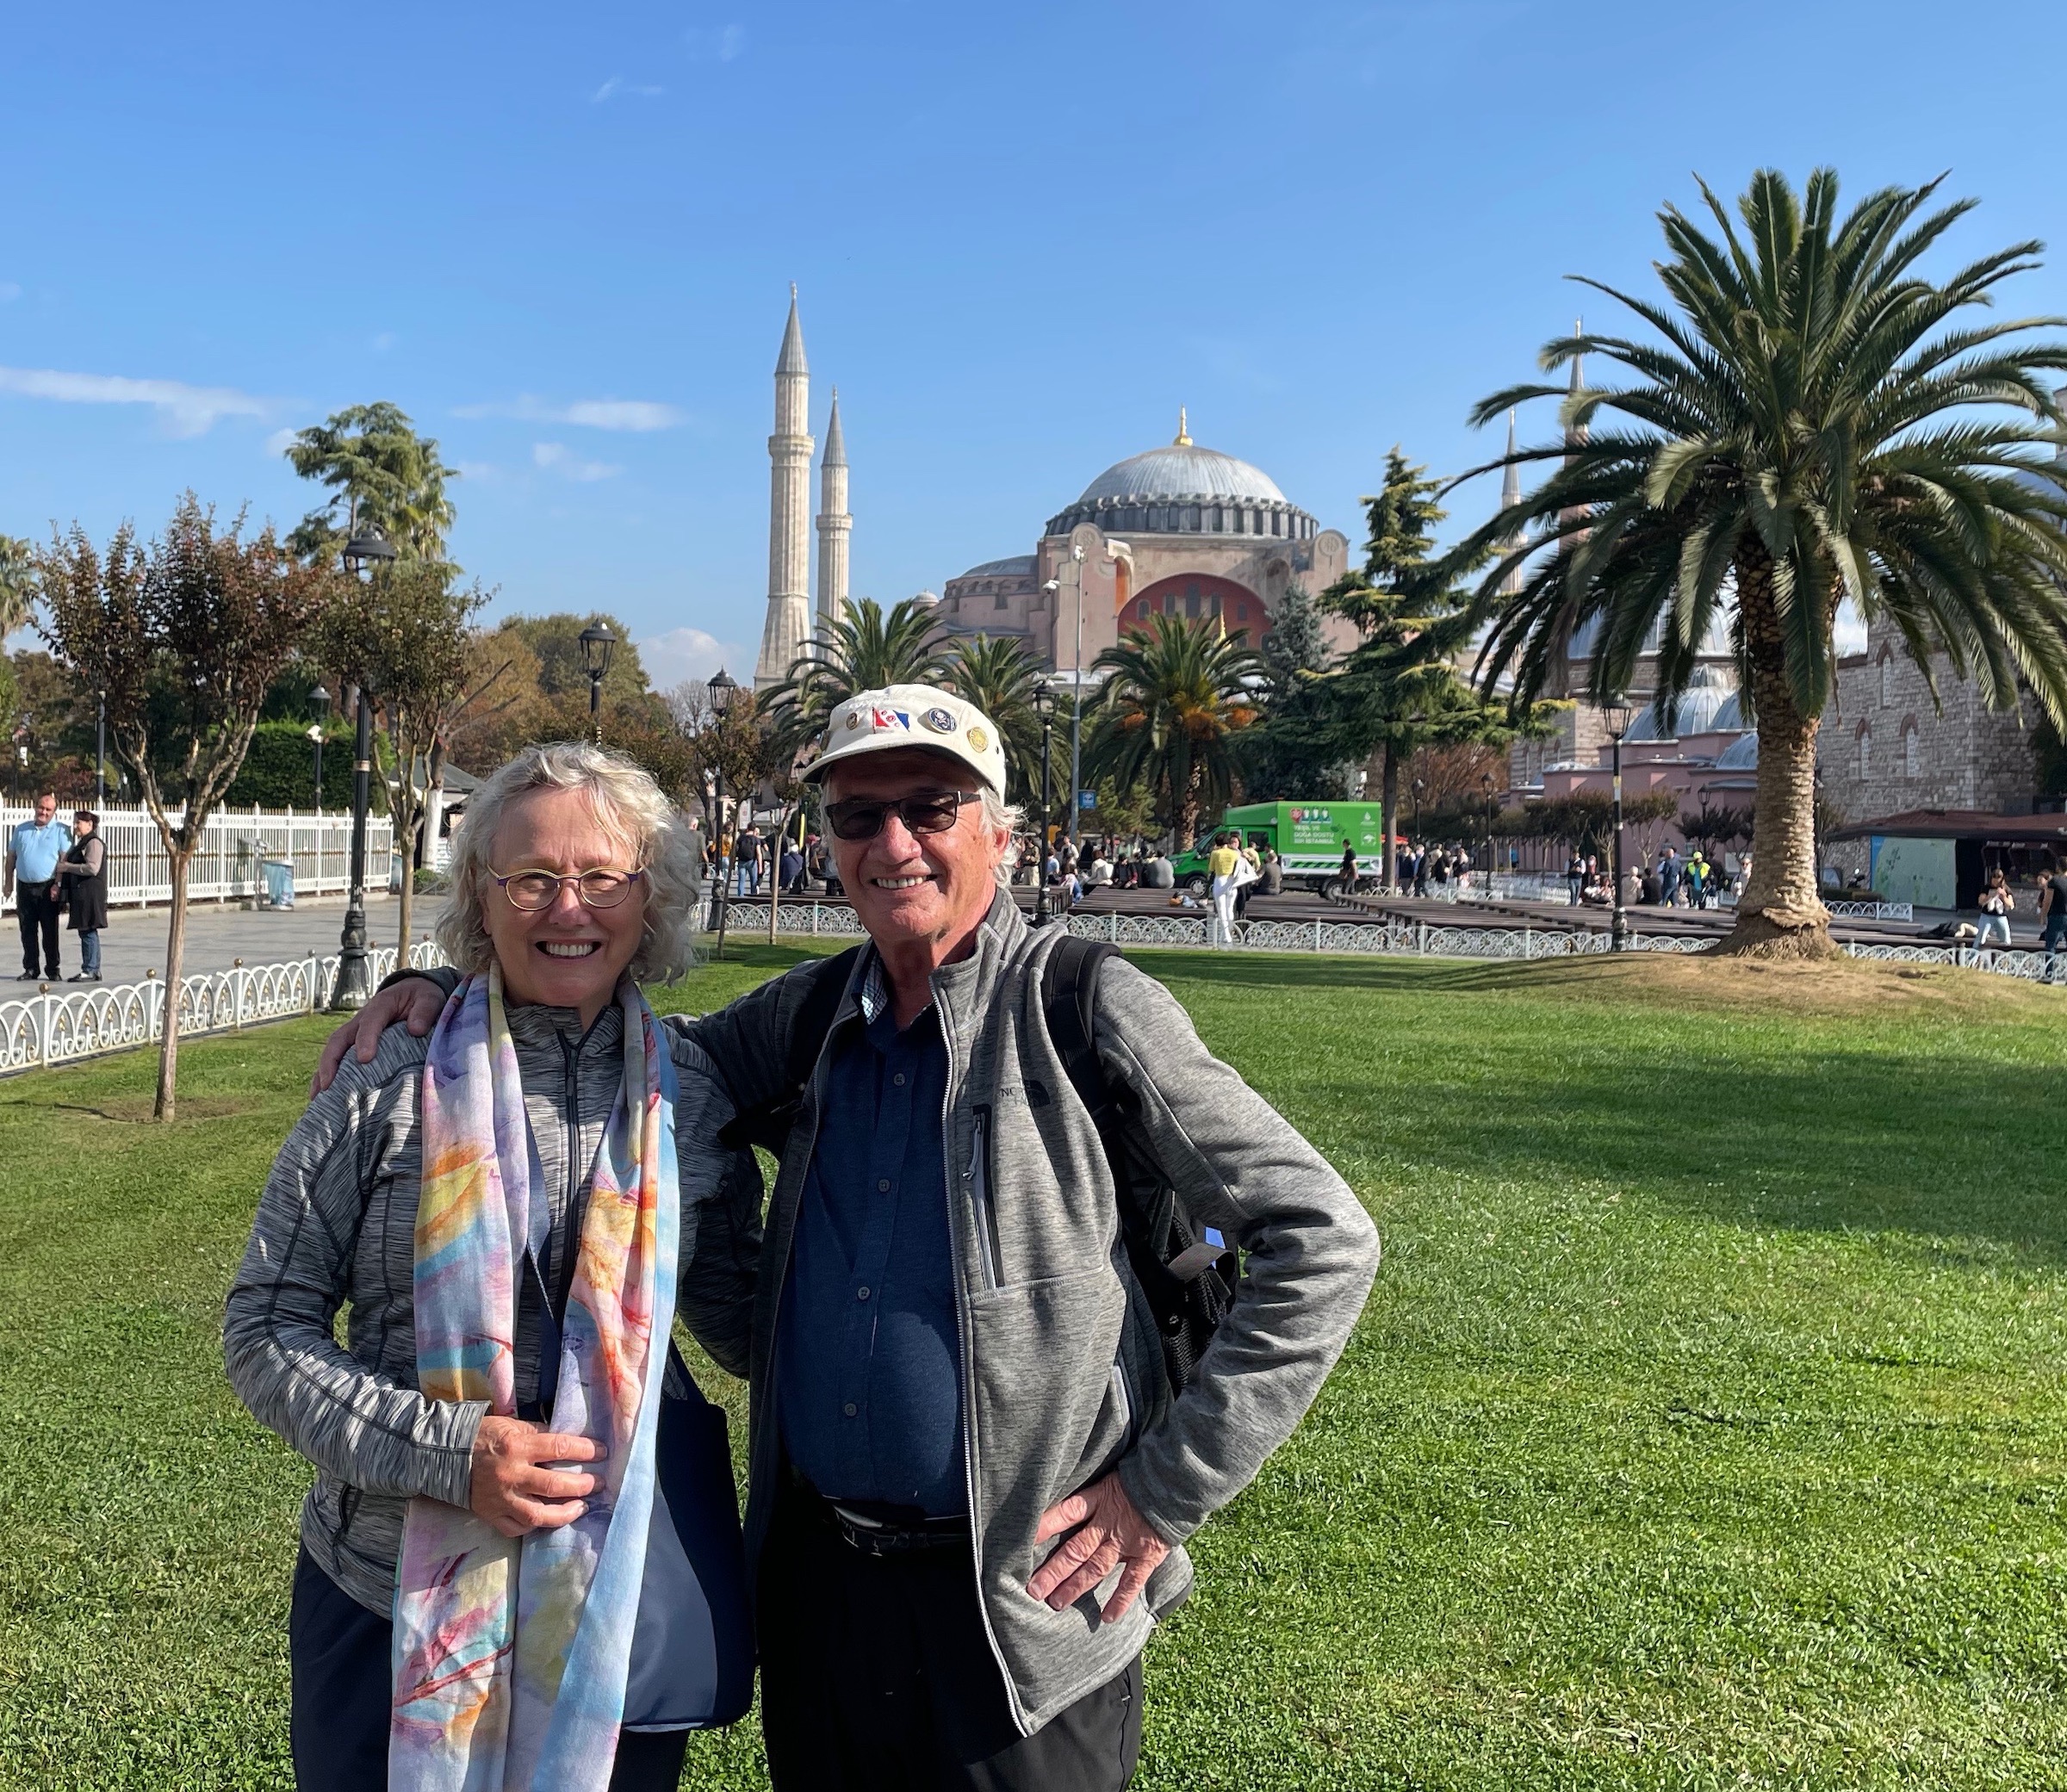 In Front of Hagia Sophia, the Sultanhamet